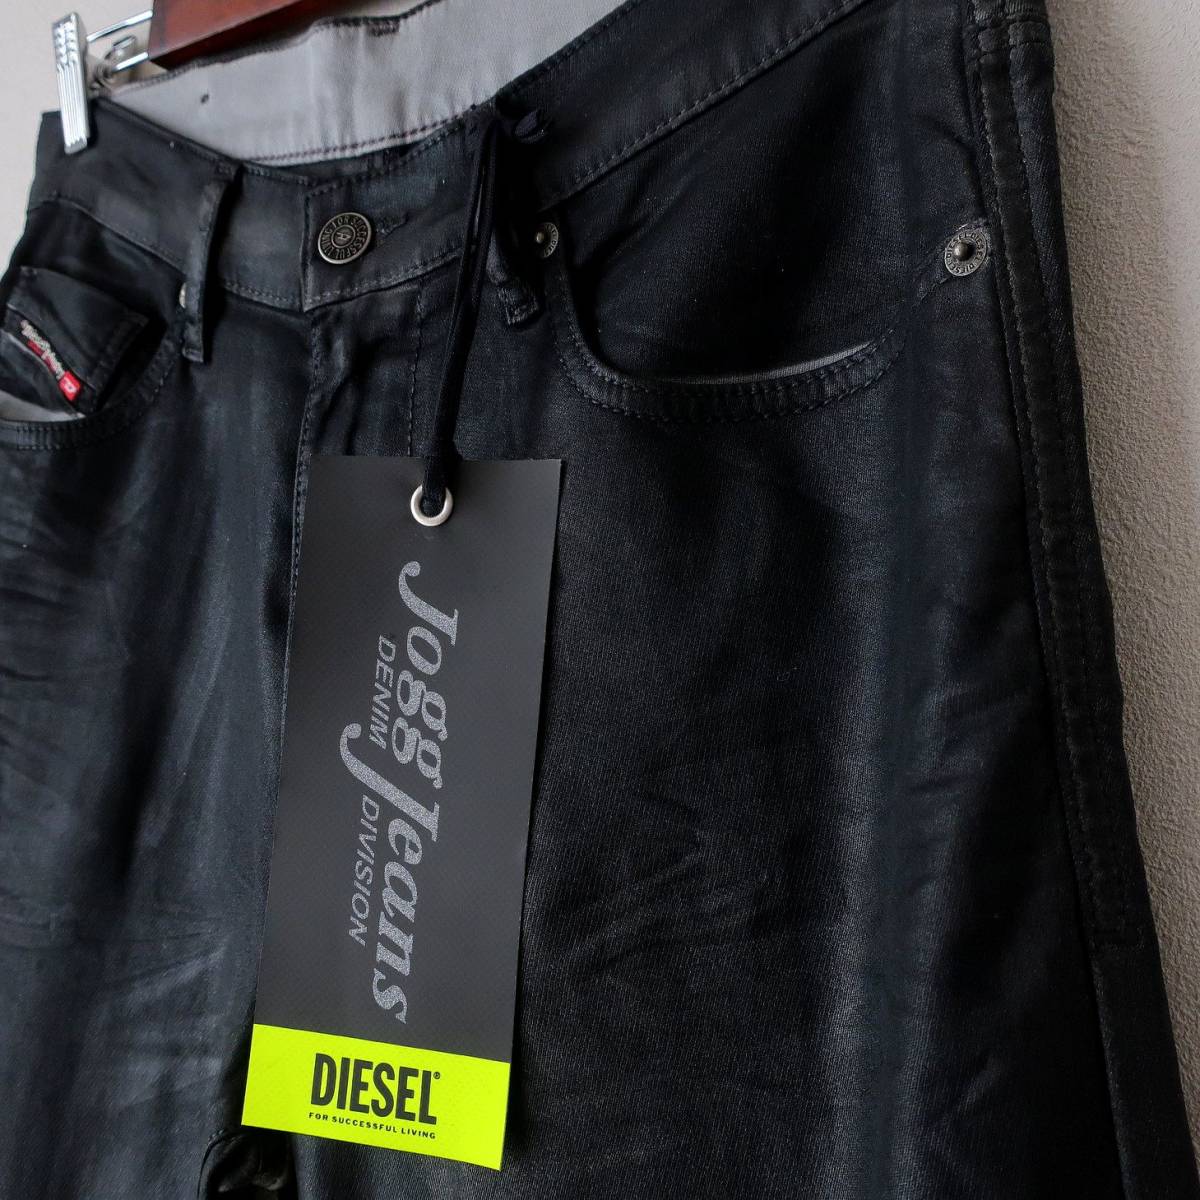 新品 DIESEL ジョグジーンズ スリム テーパード ストレッチ ジーンズ デニム リヨセル パンツ 黒 ブラック ディーゼル メンズ W30 Mサイズ_画像4